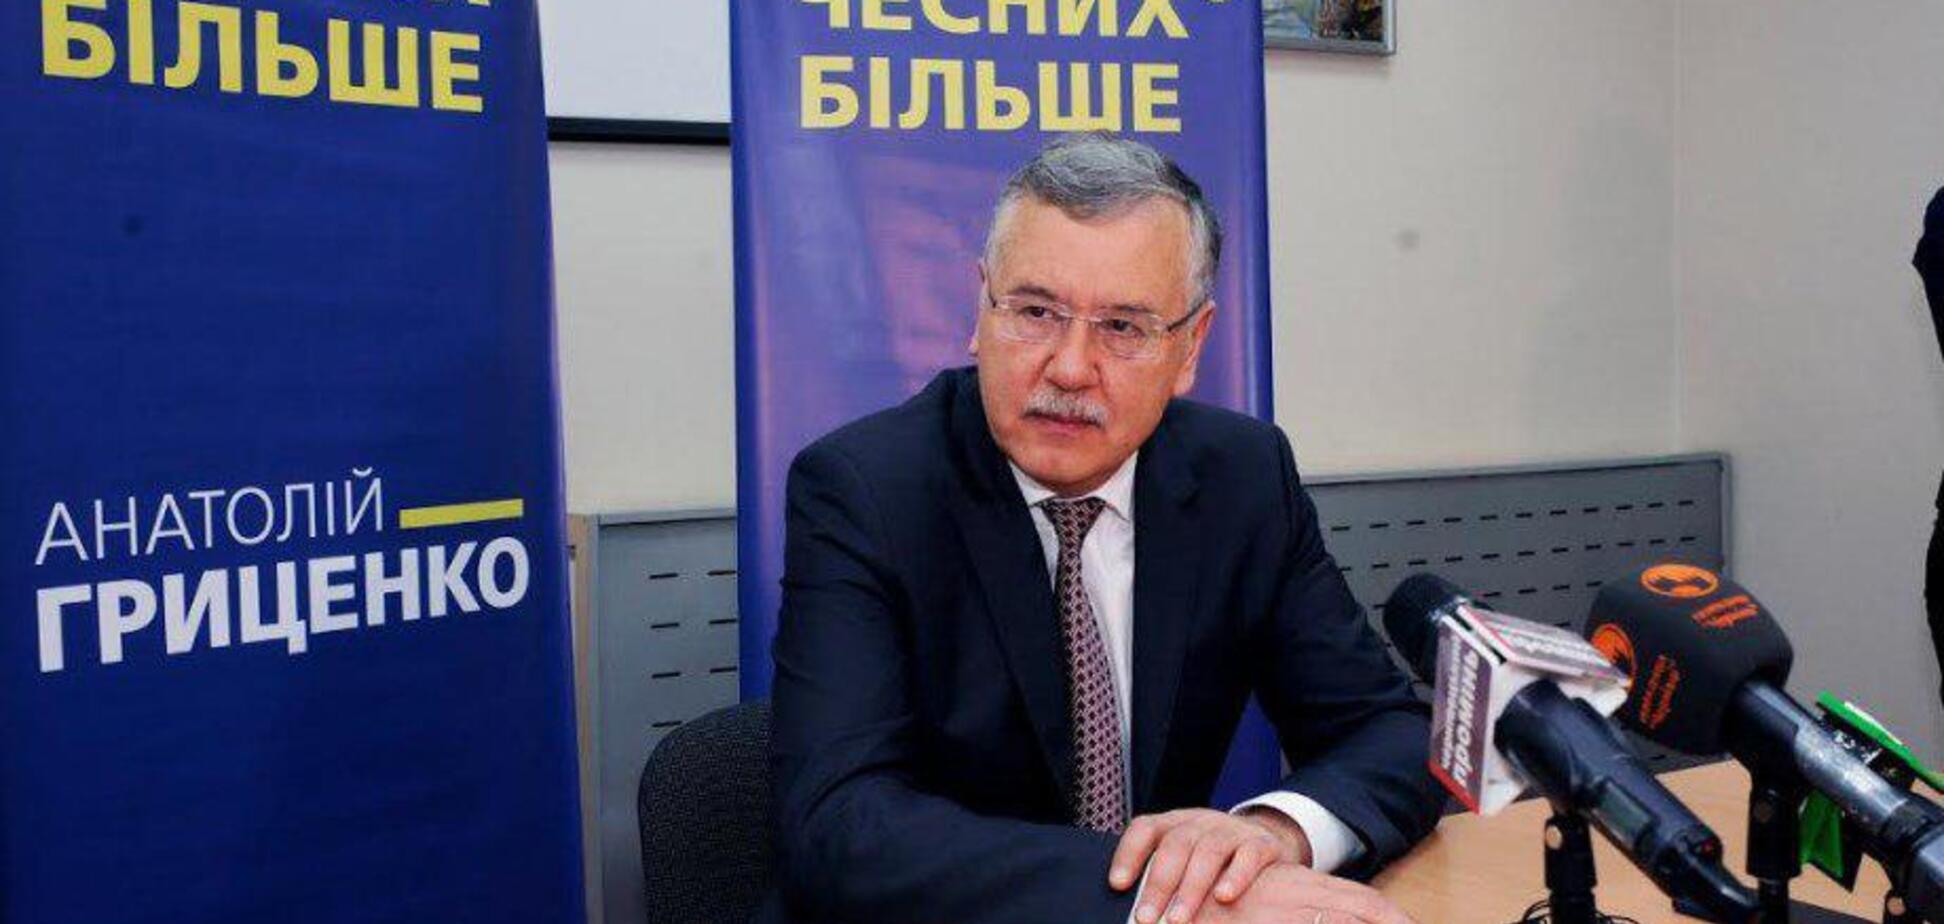 Гриценко: в Украине нужно провести общенациональную дискуссию о возможности двойного гражданства